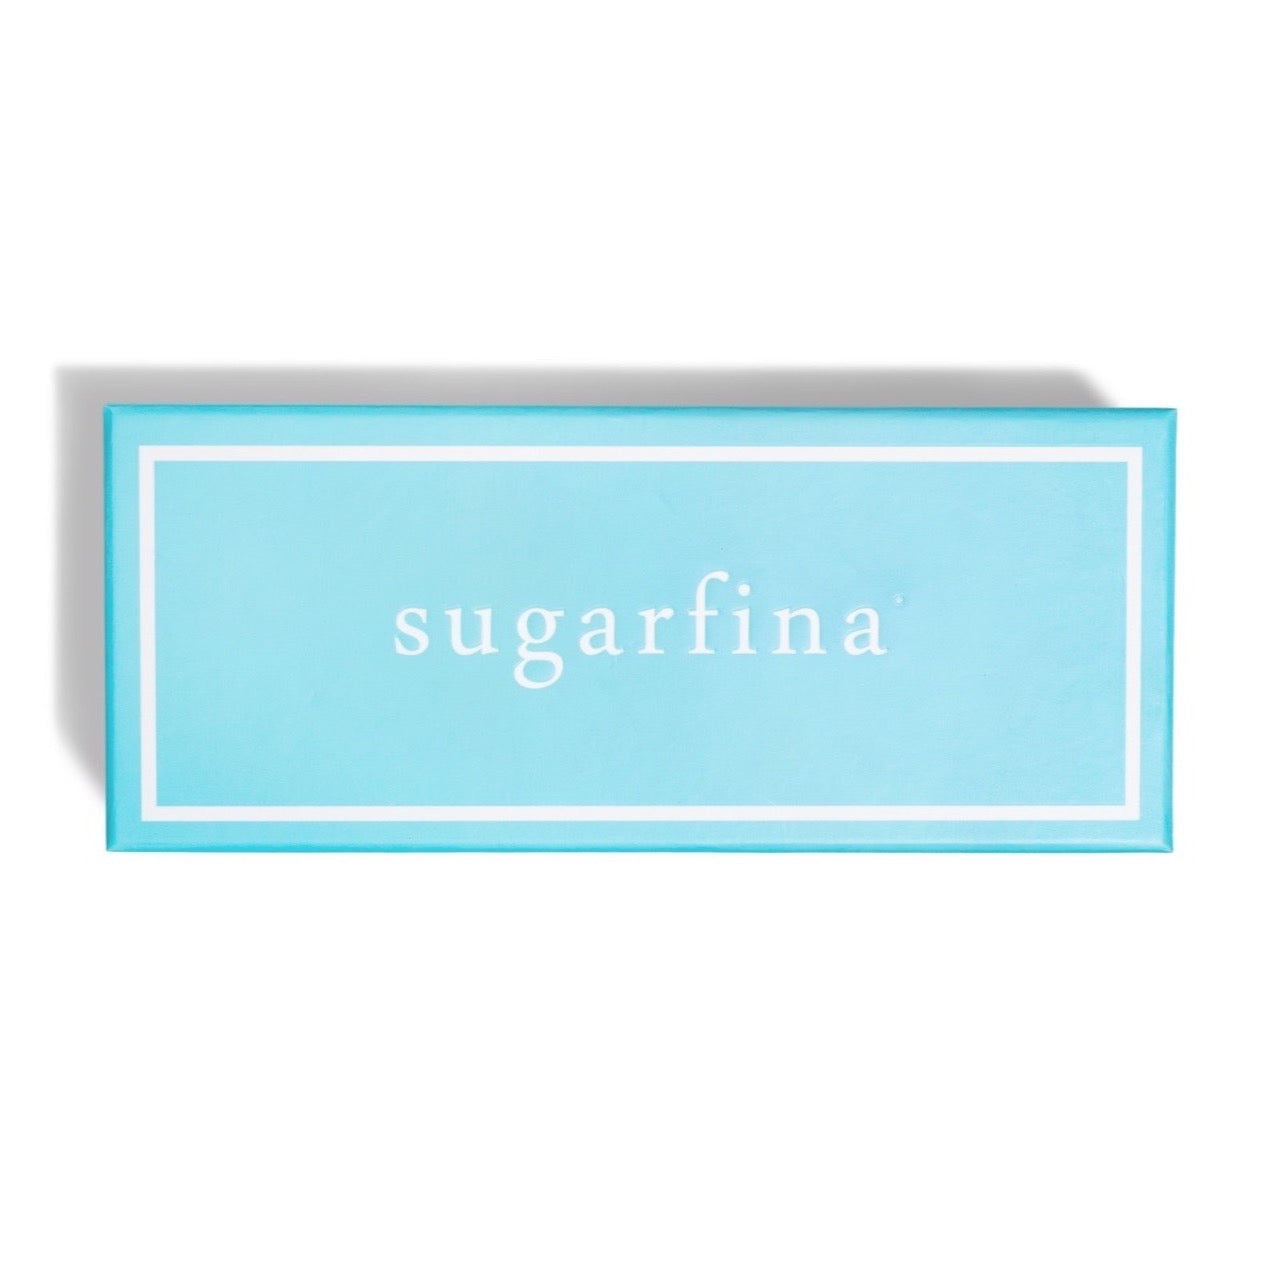 Sugarfina Candy Bento Box - Vyno